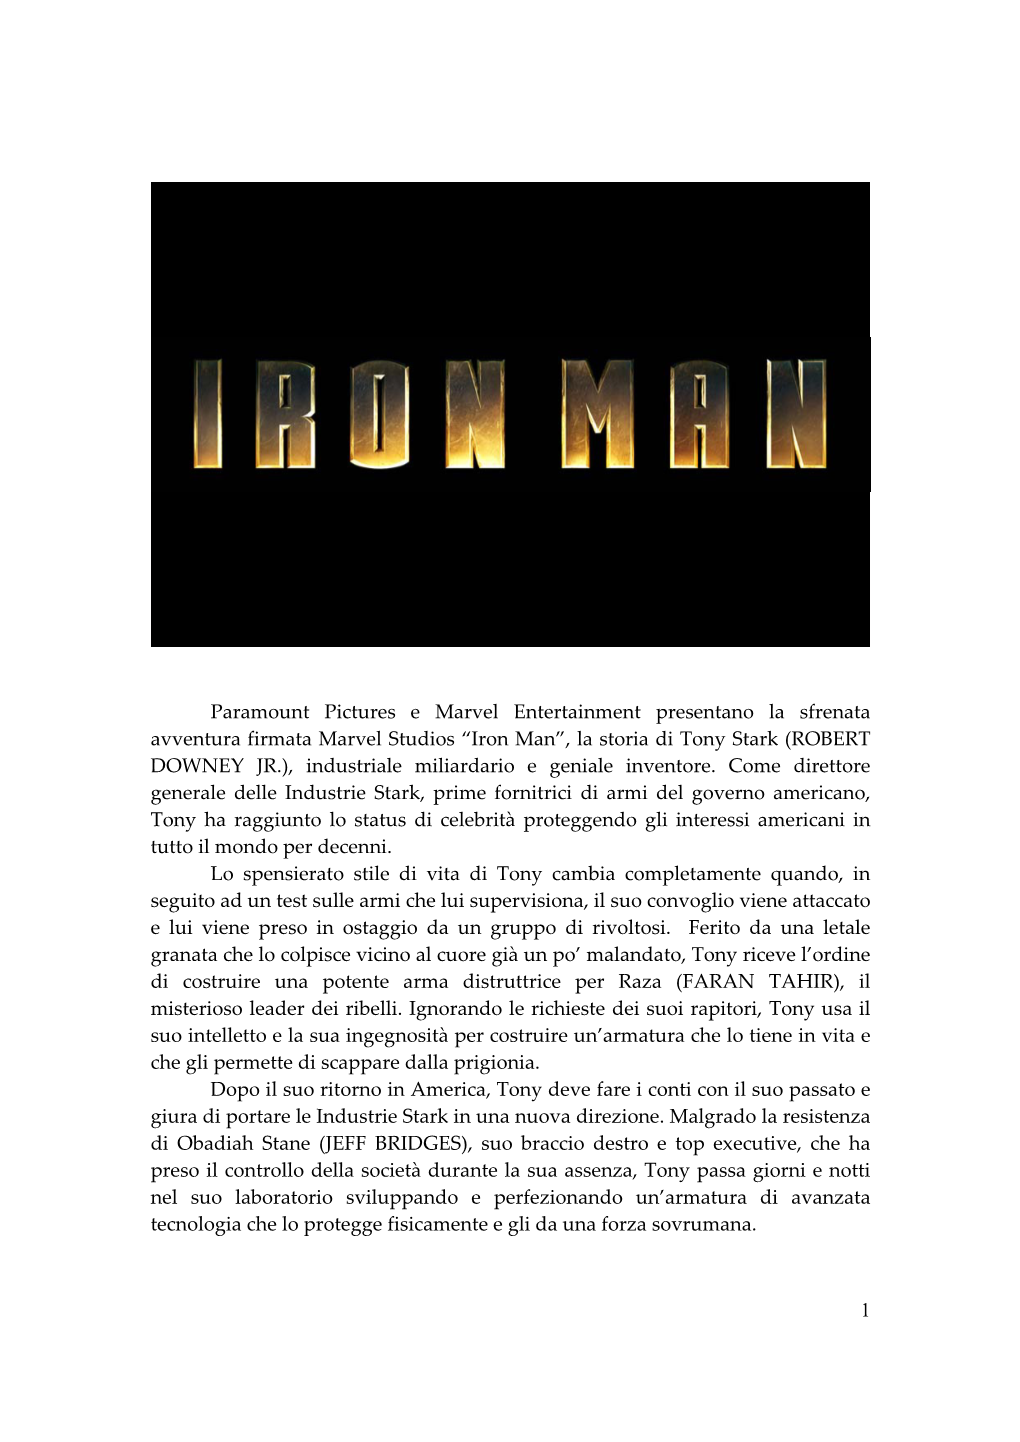 Iron Man”, La Storia Di Tony Stark (ROBERT DOWNEY JR.), Industriale Miliardario E Geniale Inventore